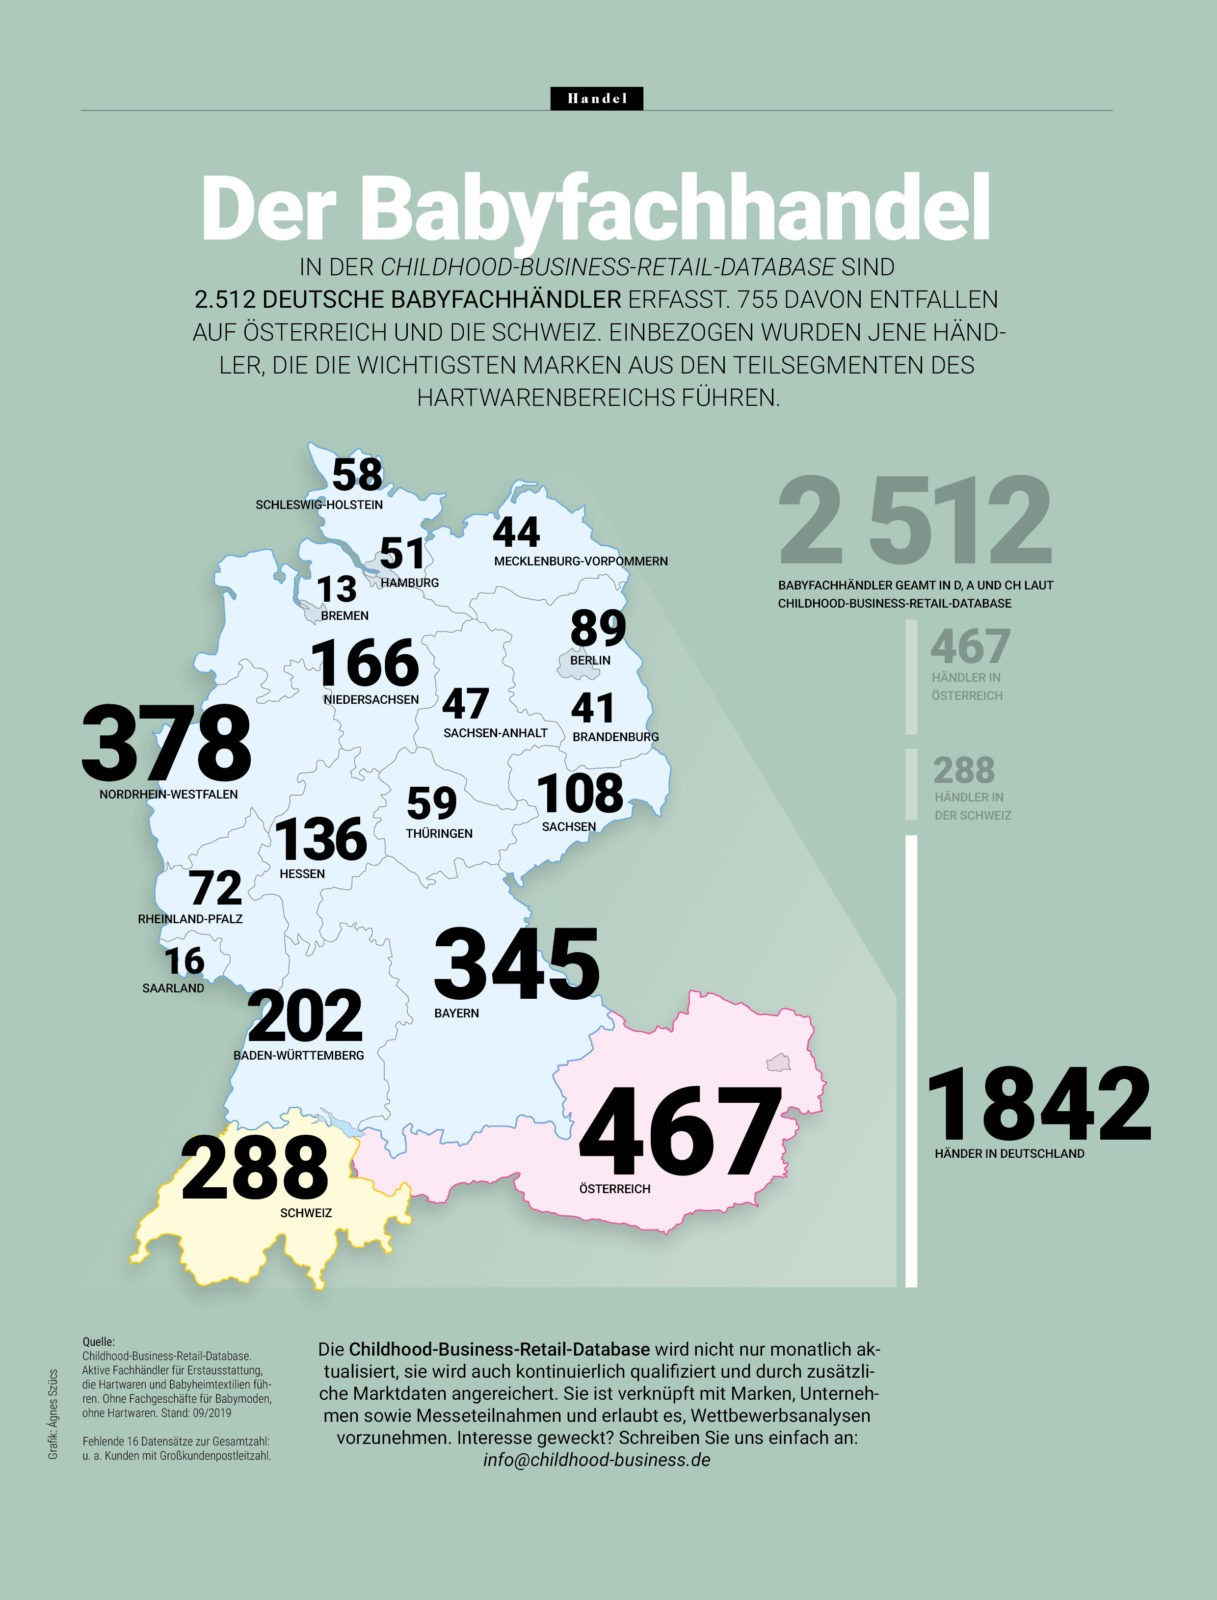 Der Babyfachhandel 2021 in DACH – Karte